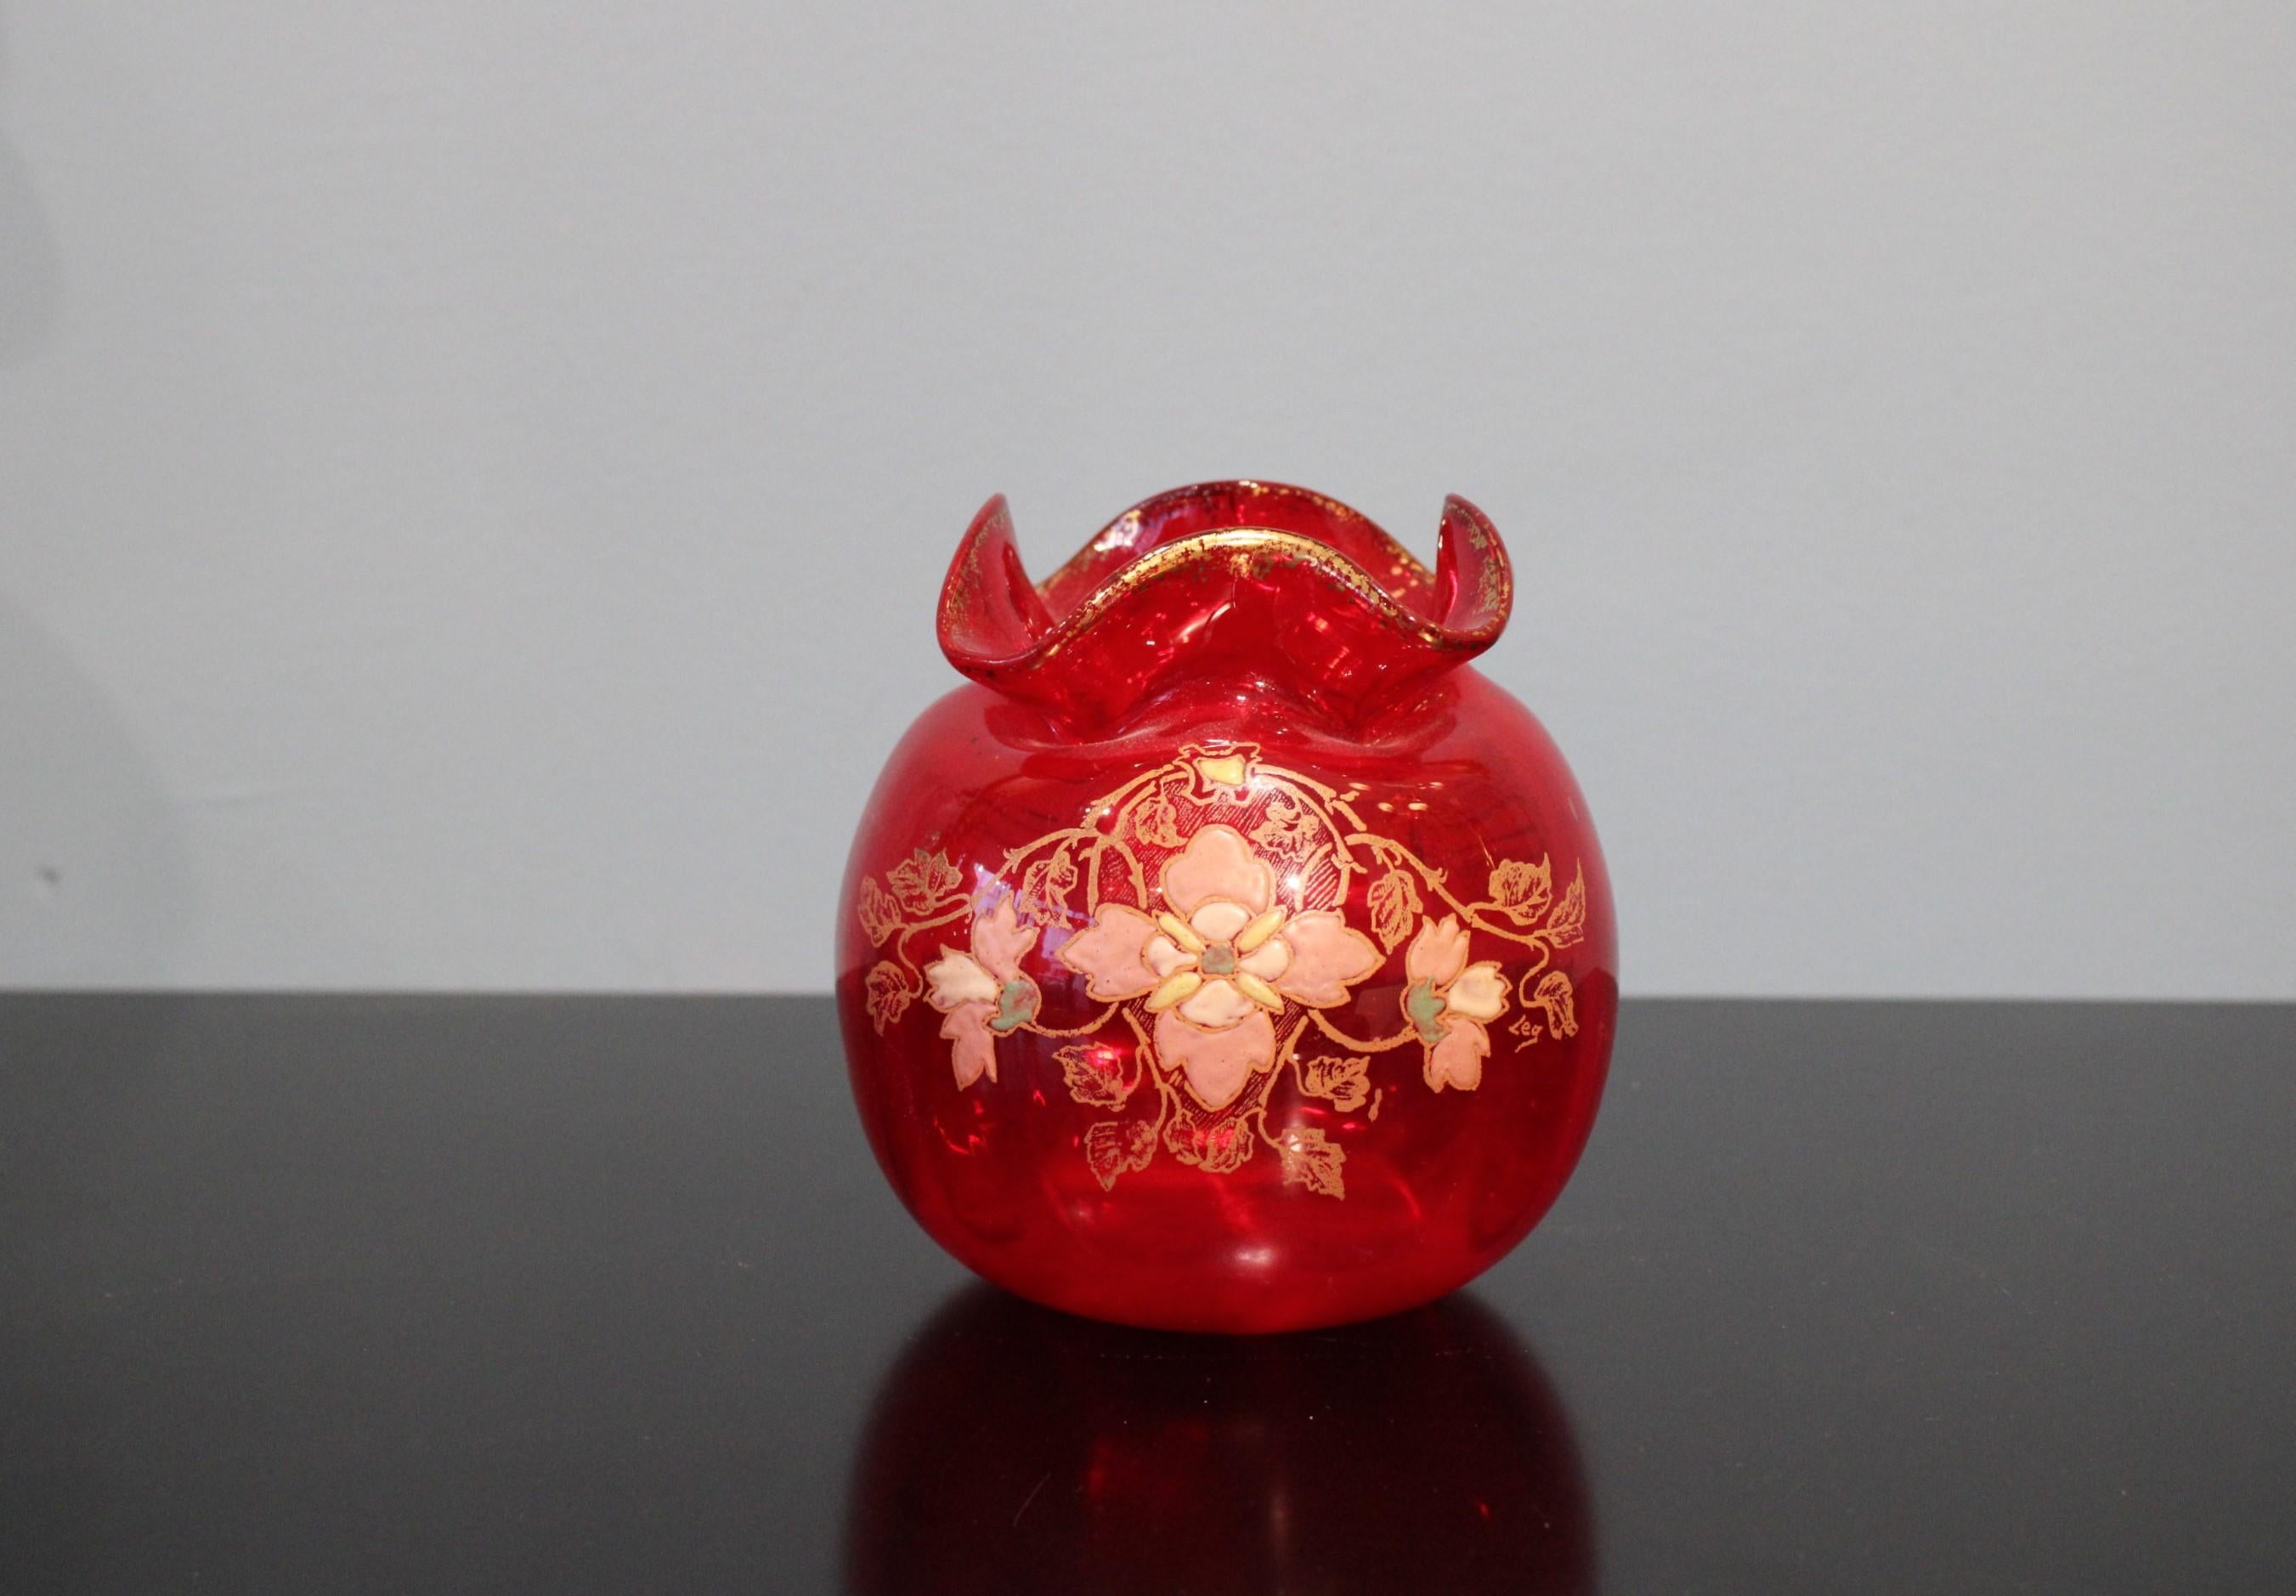 Vase aus Glas. 
Jugendstil-Stil. Um 1900.
Die Farbe ist rot.